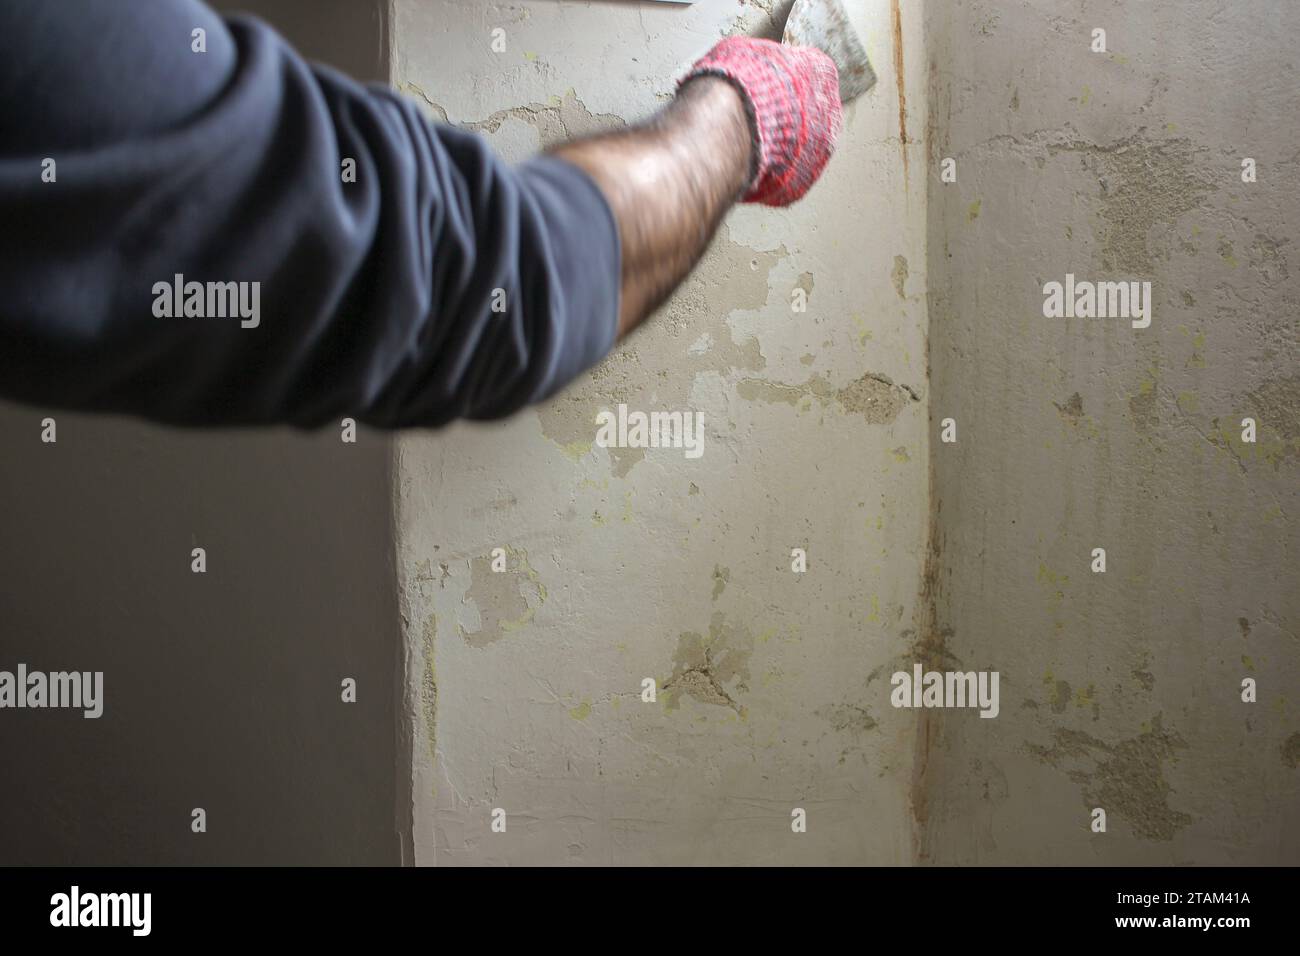 Prima del pennello: Mano con guanti utilizzando la spatola per preparare la superficie della parete Foto Stock